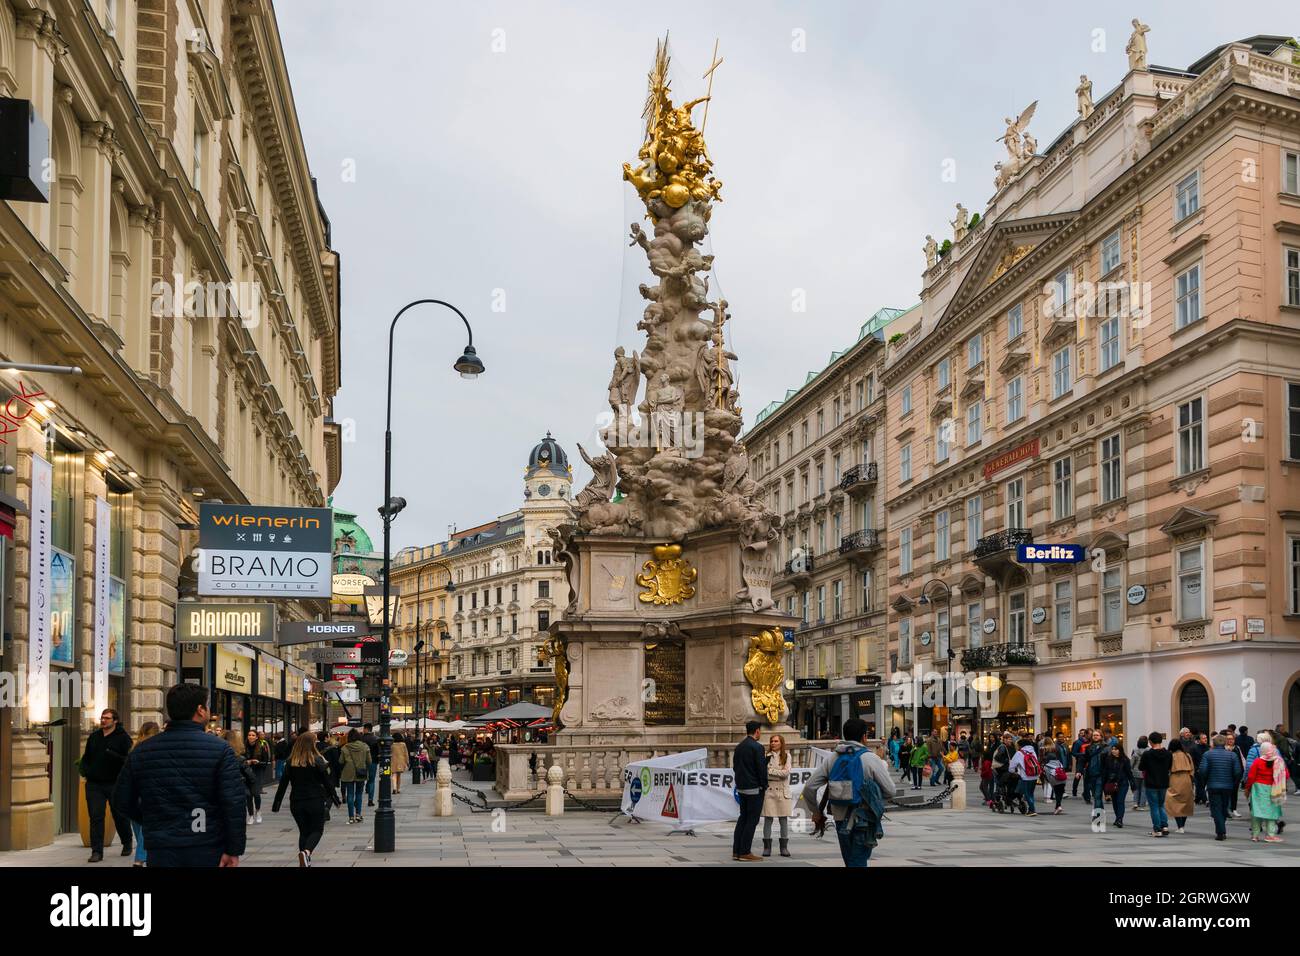 30 maggio 2019 Vienna, Austria - viste panoramiche di una delle città più belle d'Europa - Vienna. Popoli per le strade, vita urbana a Vienna. Nuvoloso primavera Foto Stock